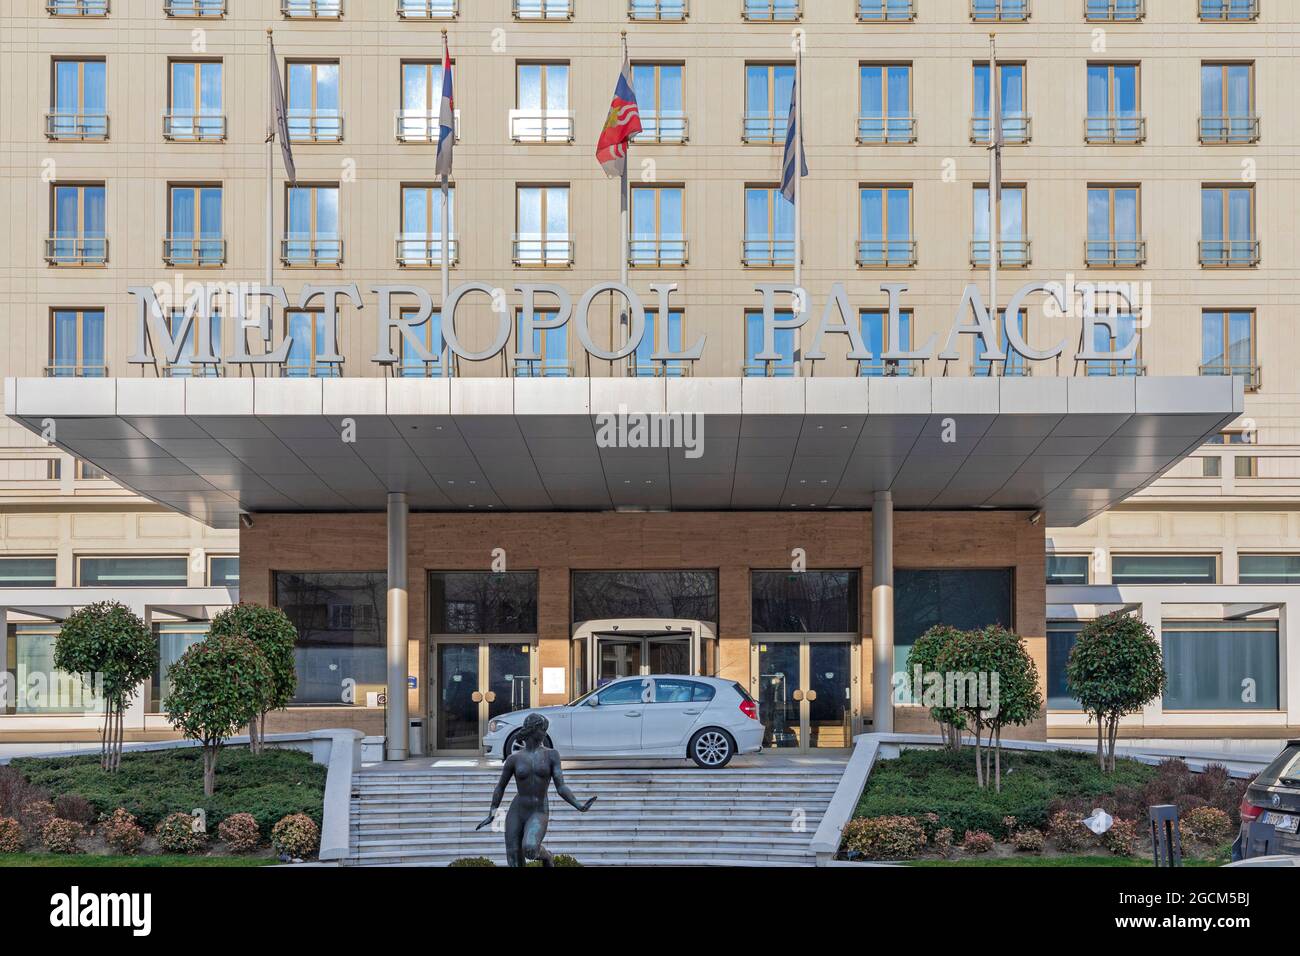 Belgrado, Serbia - 14 de febrero de 2021: Edificio histórico del Metropol Palace Hotel en Belgrado, Serbia. Foto de stock